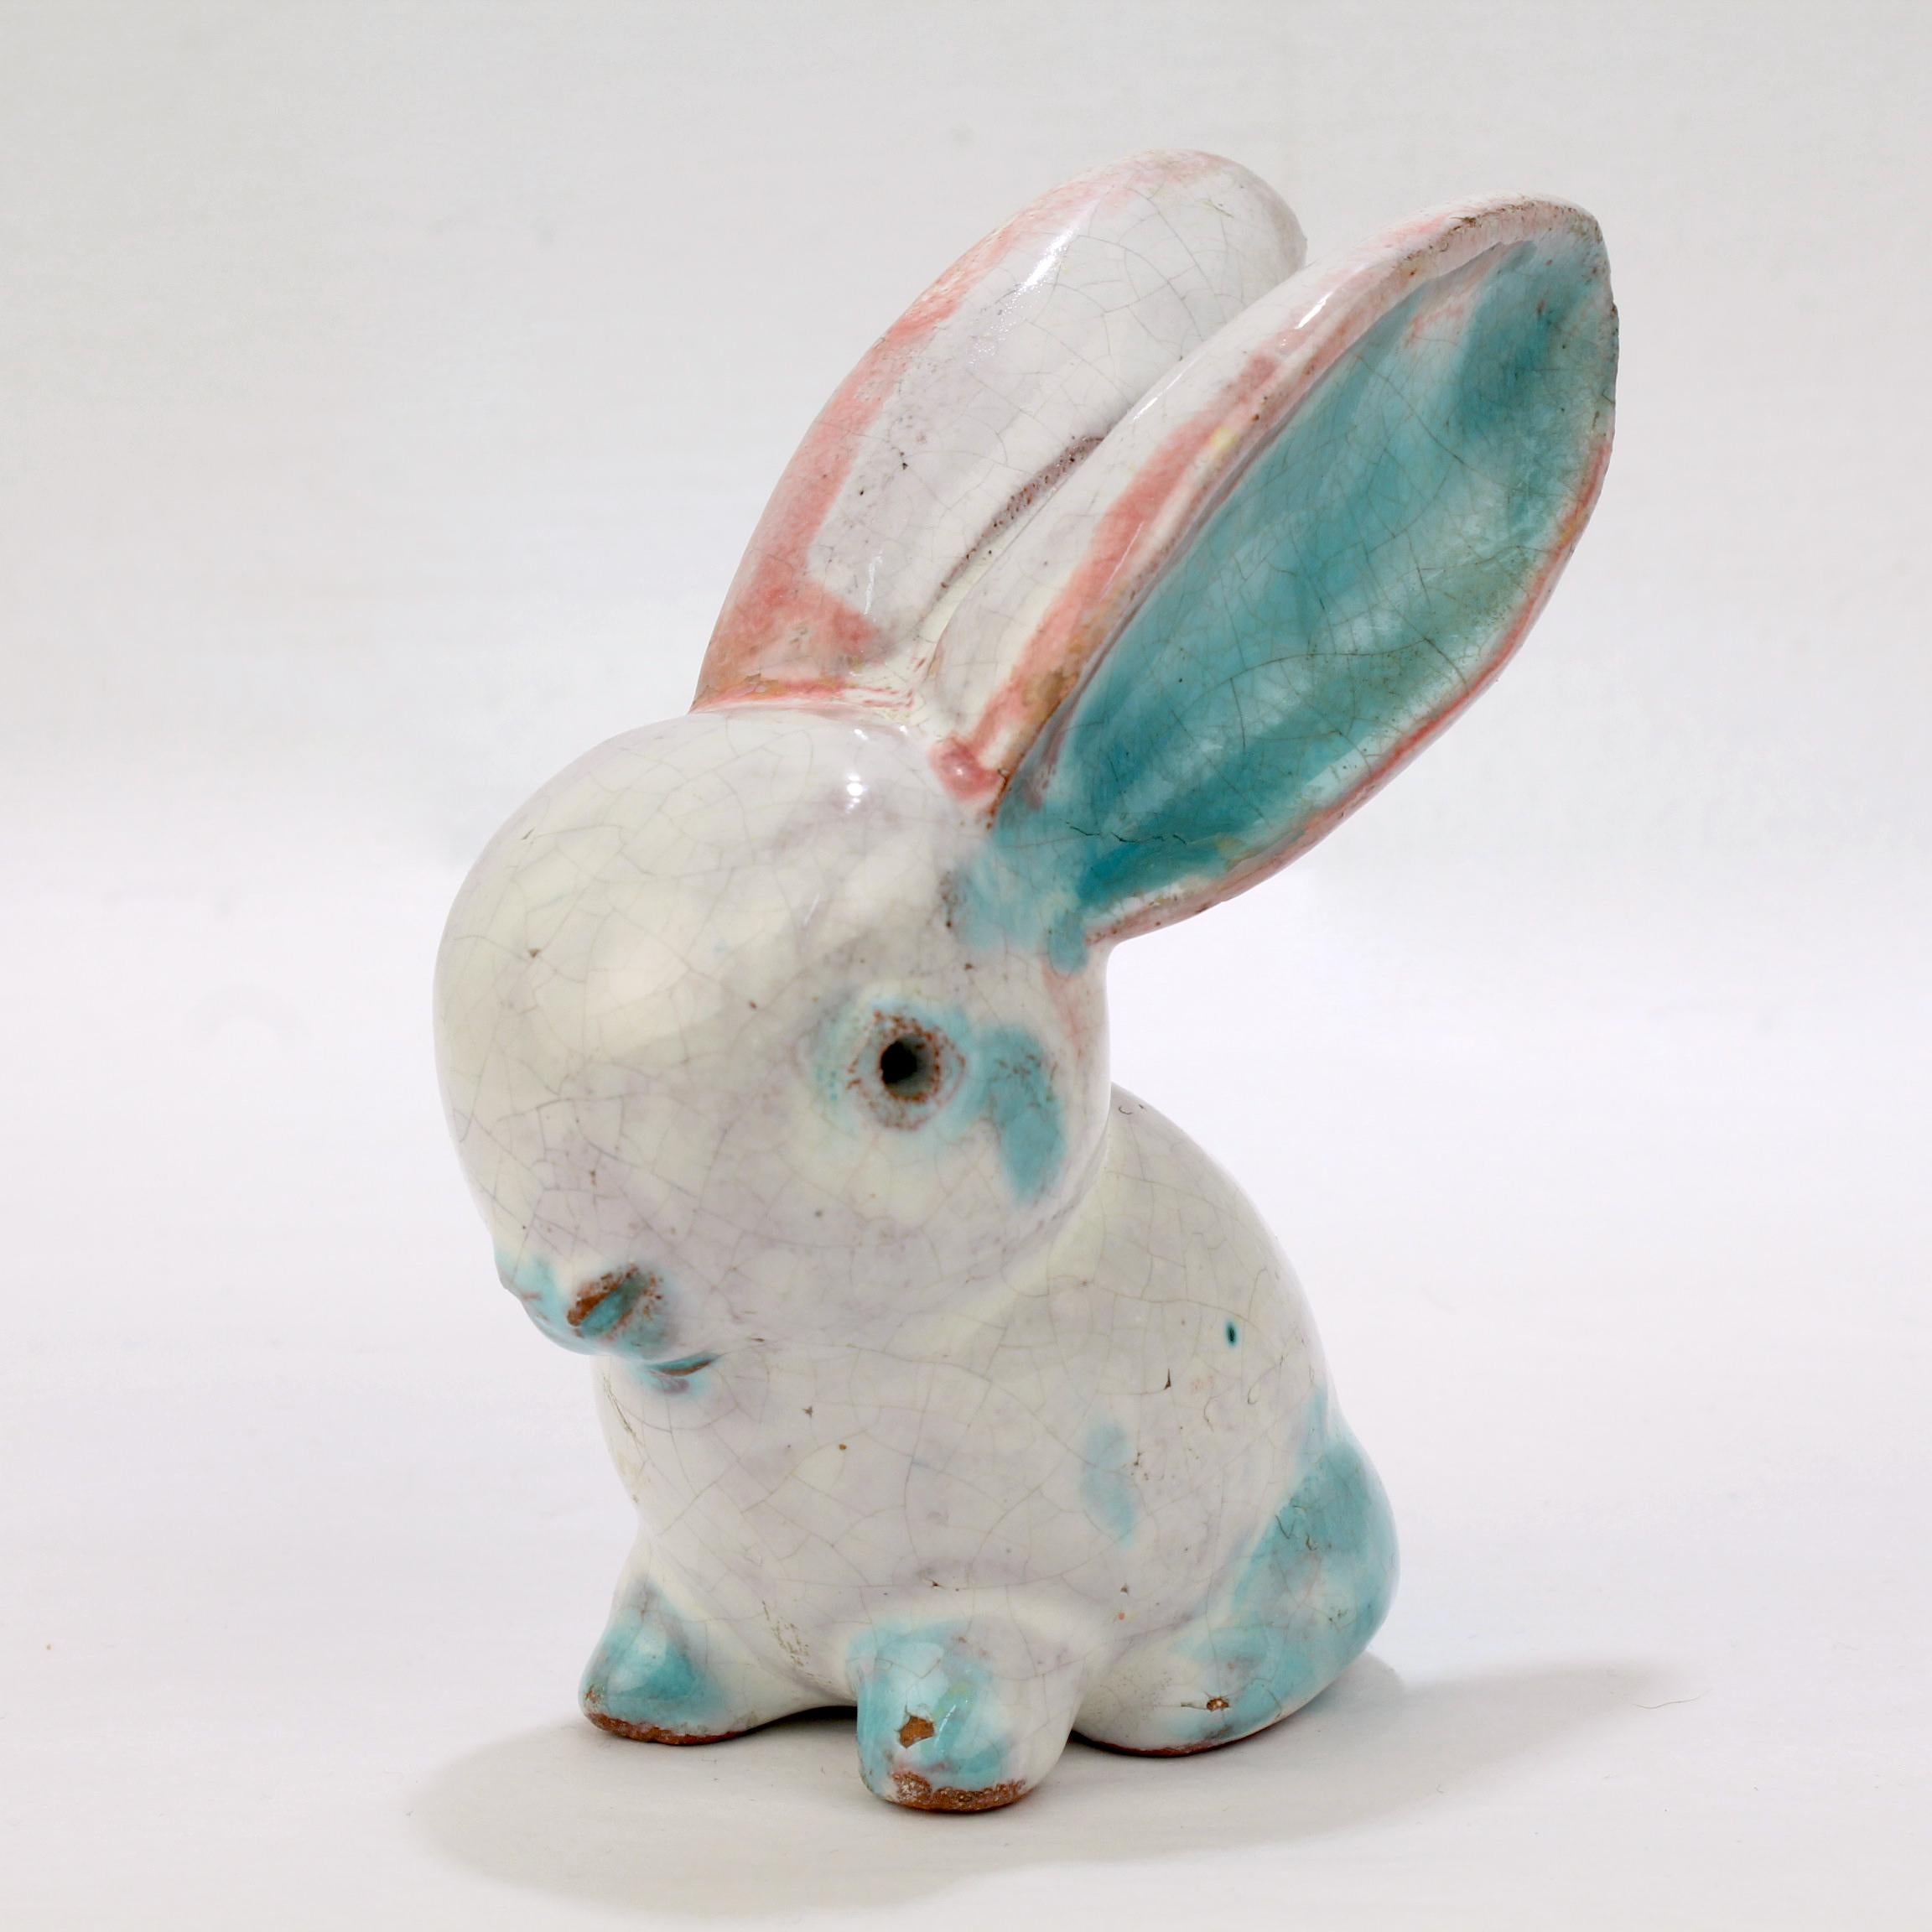 Bauhaus Antique Austrian Terracotta Pottery Rabbit Figurine by Walter Bosse for Kufstein